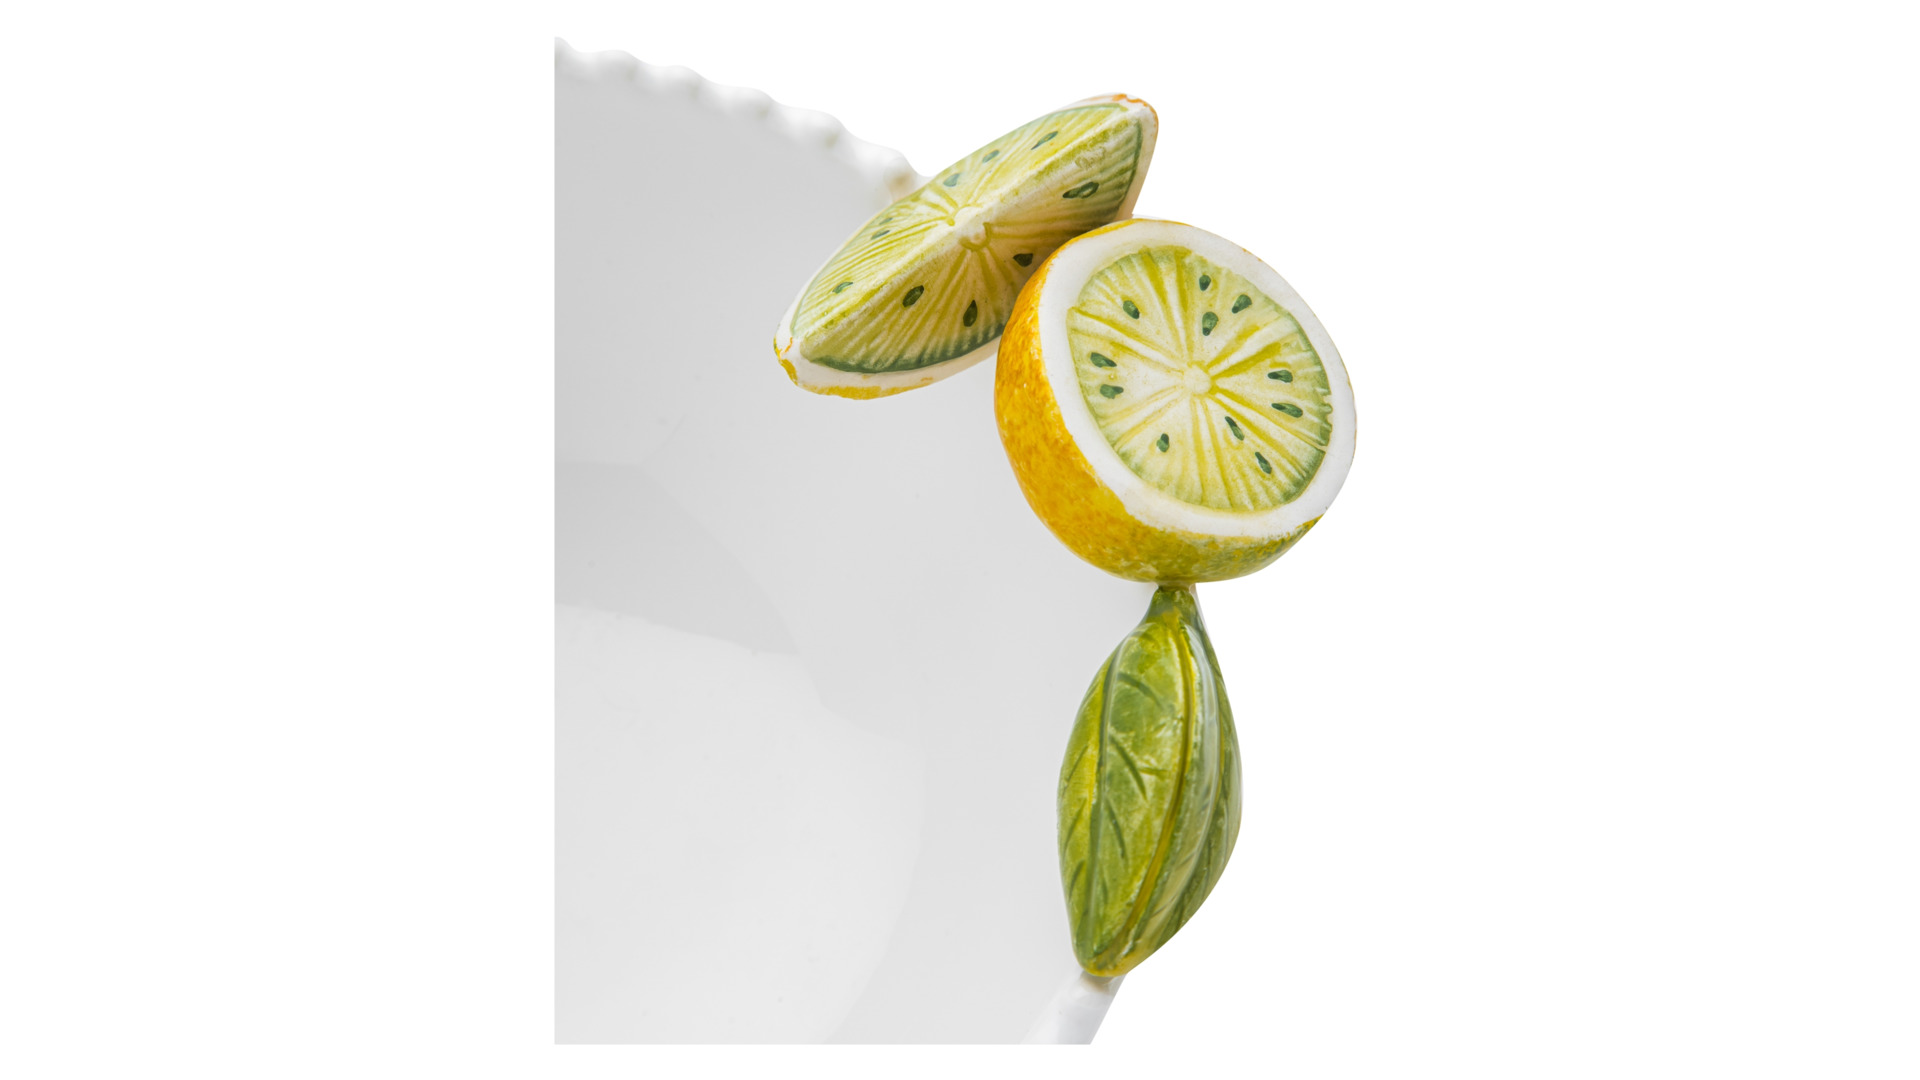 Салатник порционный Edelweiss Лимоны 18 см, h7 см, керамика